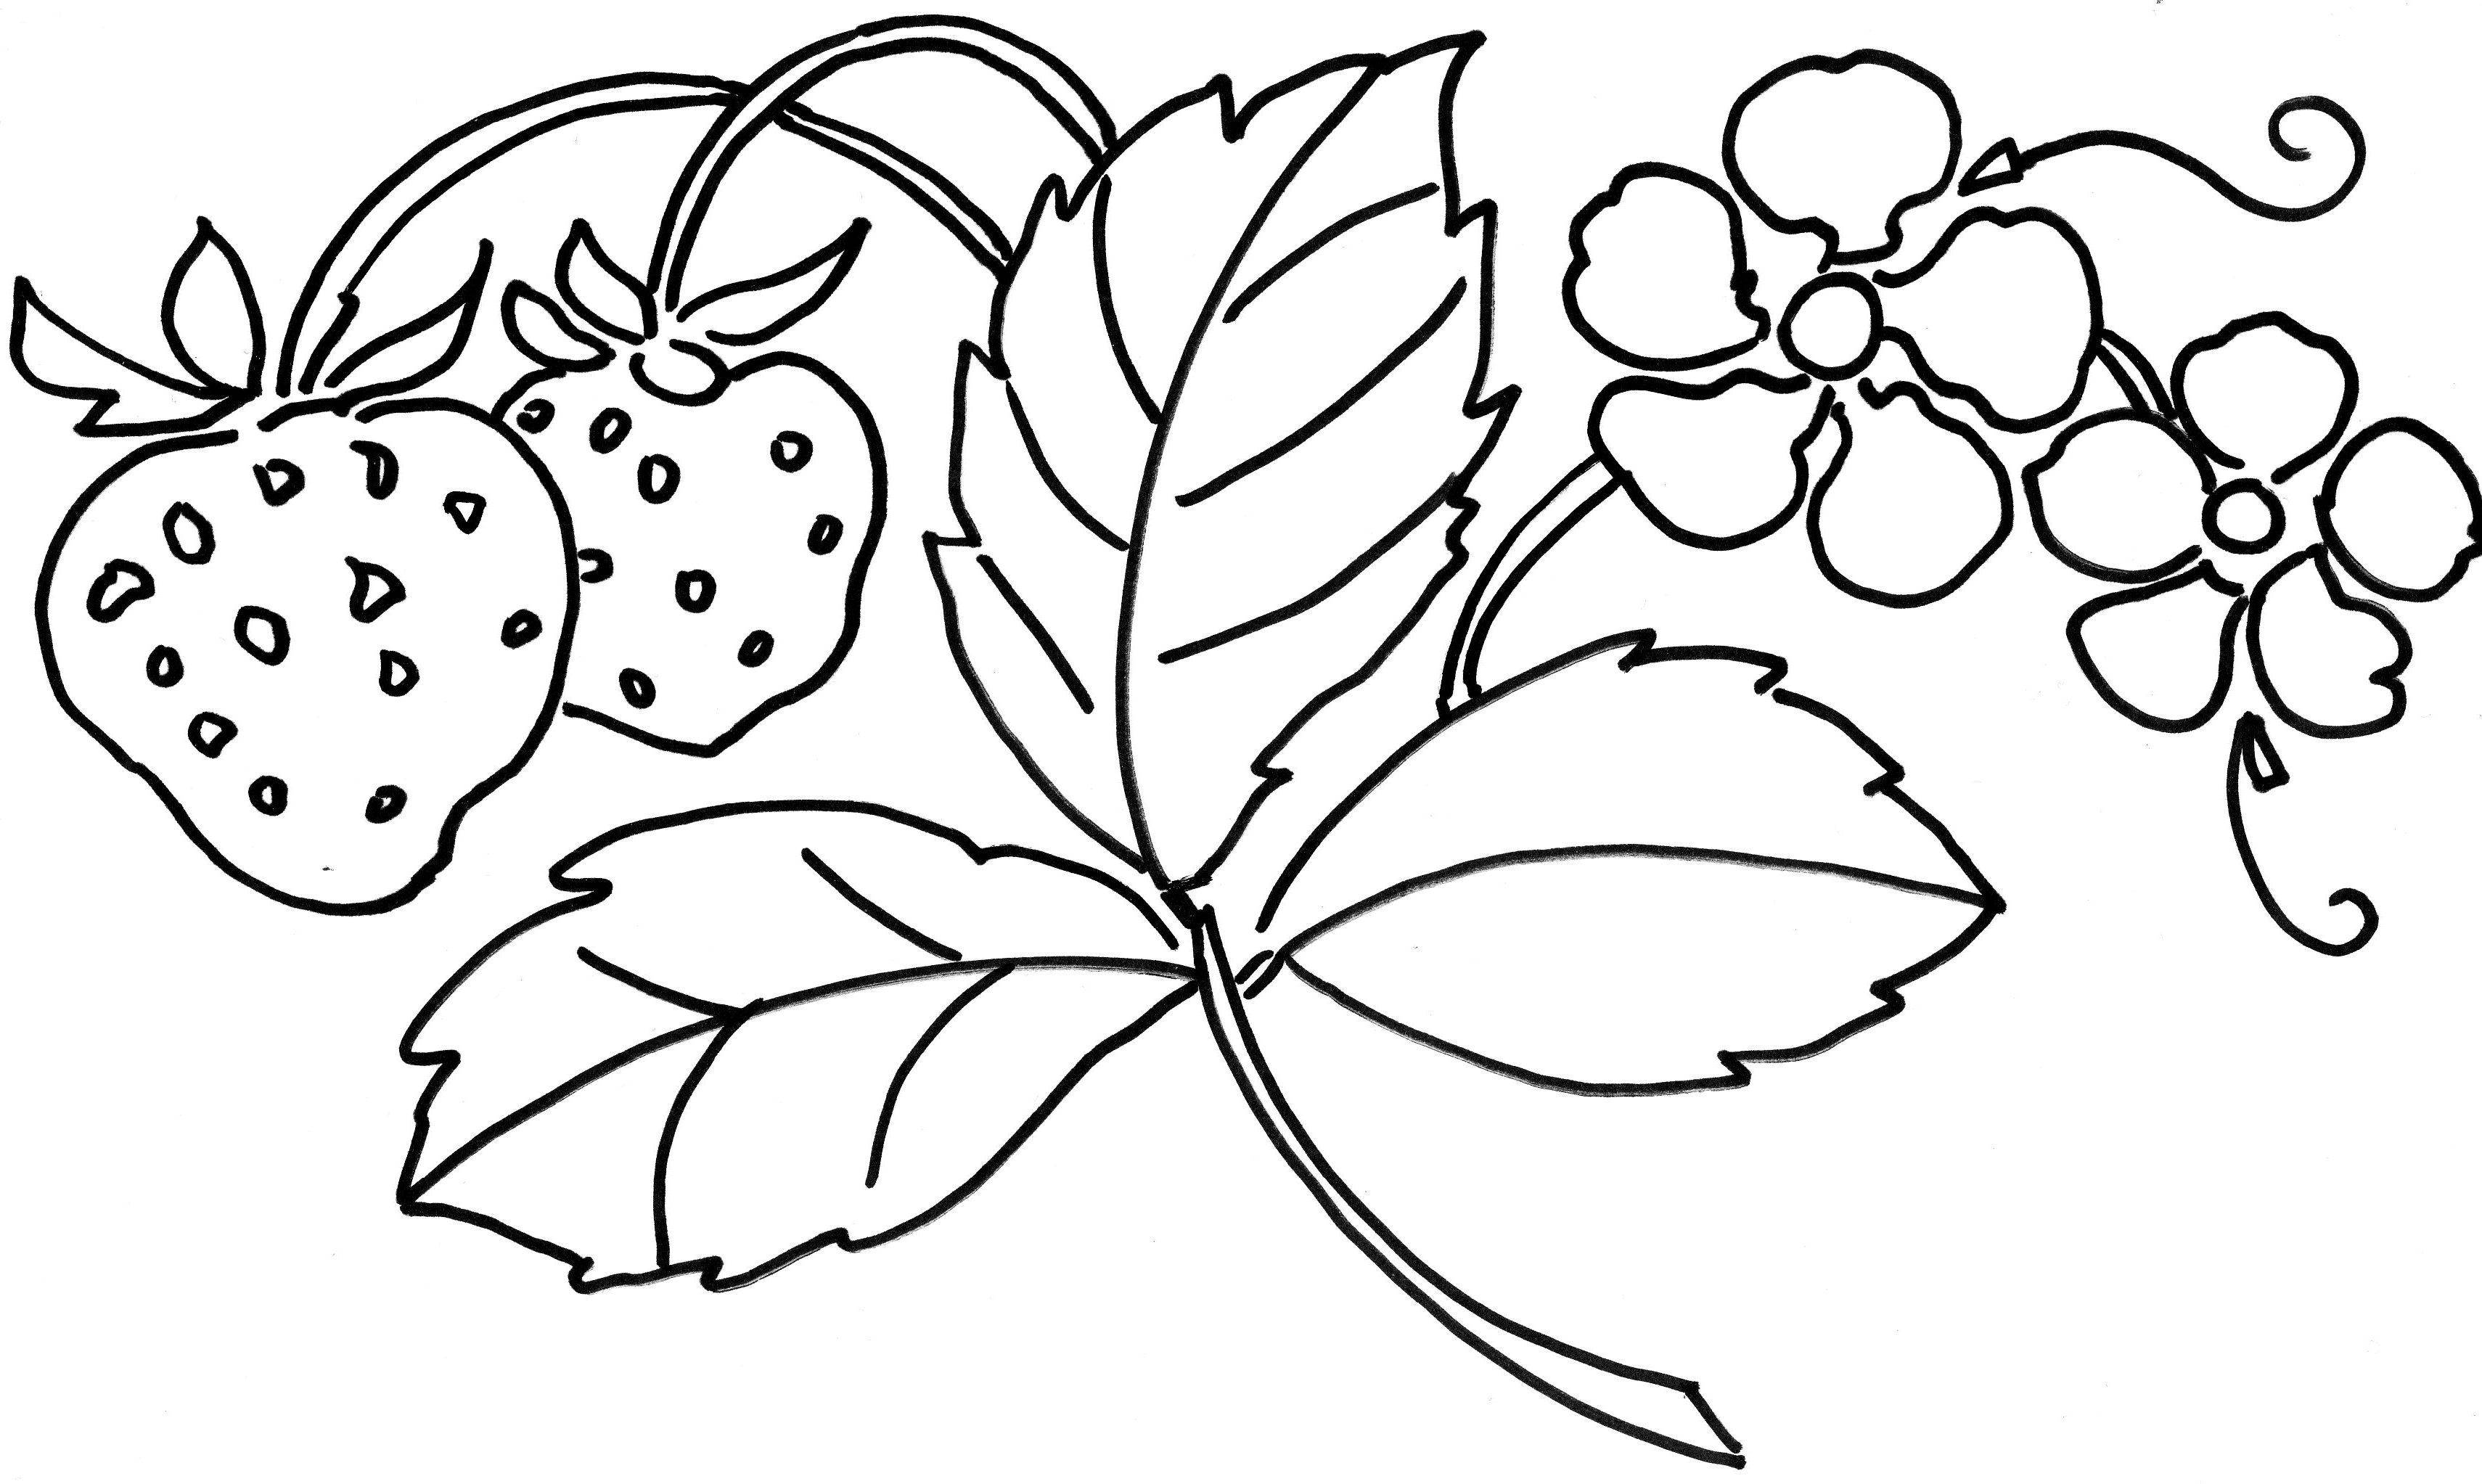 Картинки раскраски для детей ягоды: Раскраска ягоды скачать и распечатать